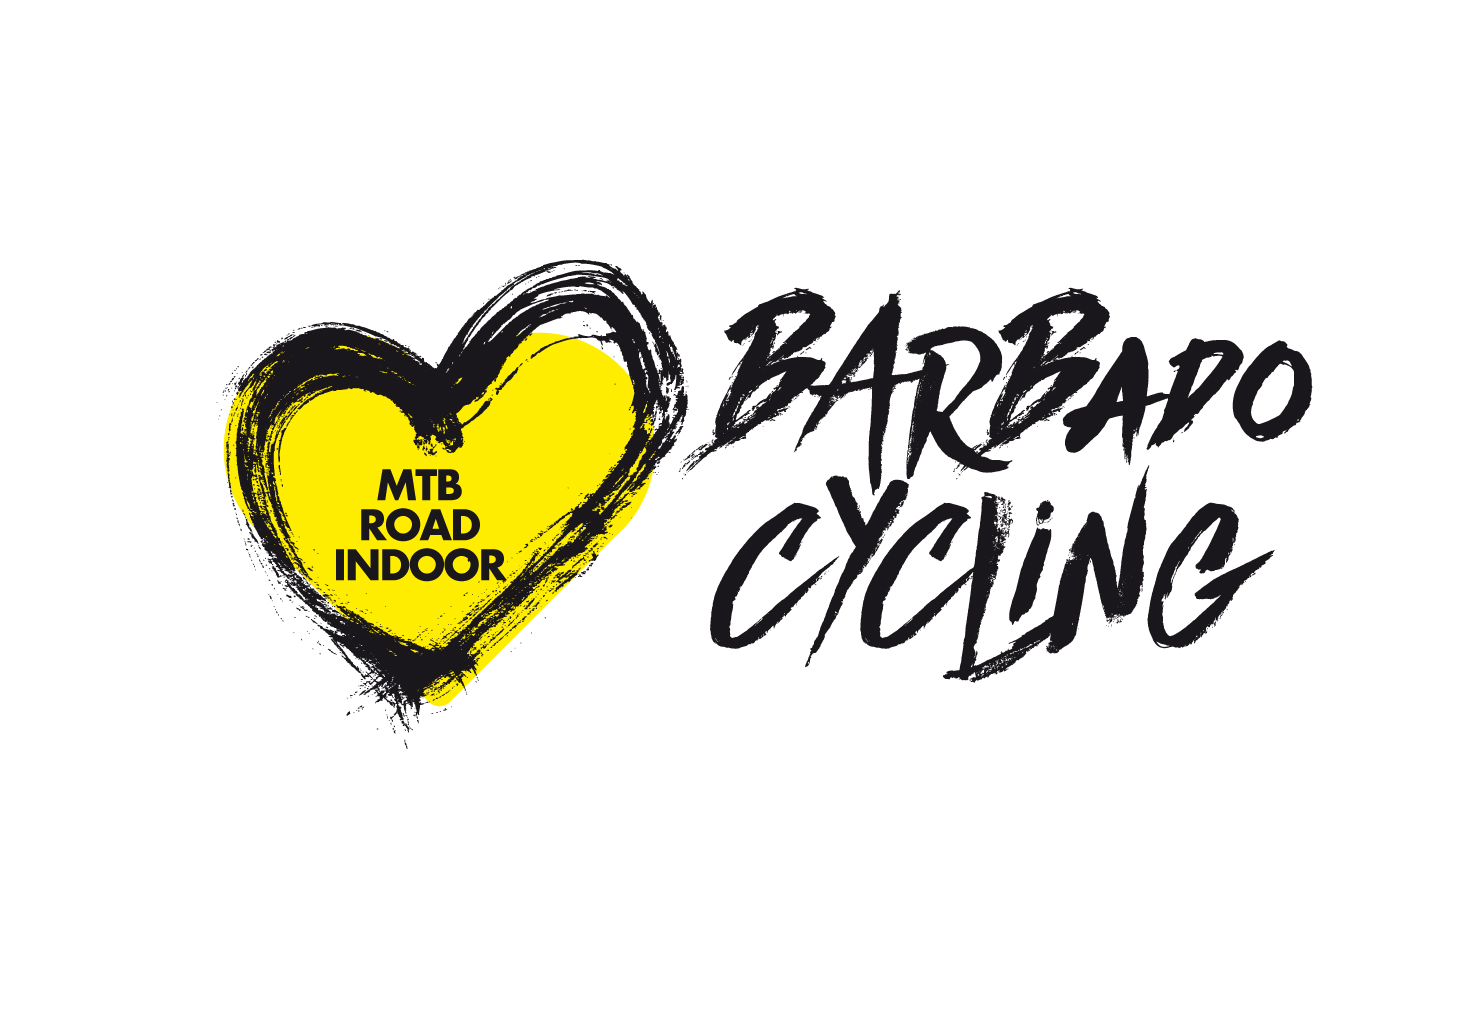 Barbado Cycling